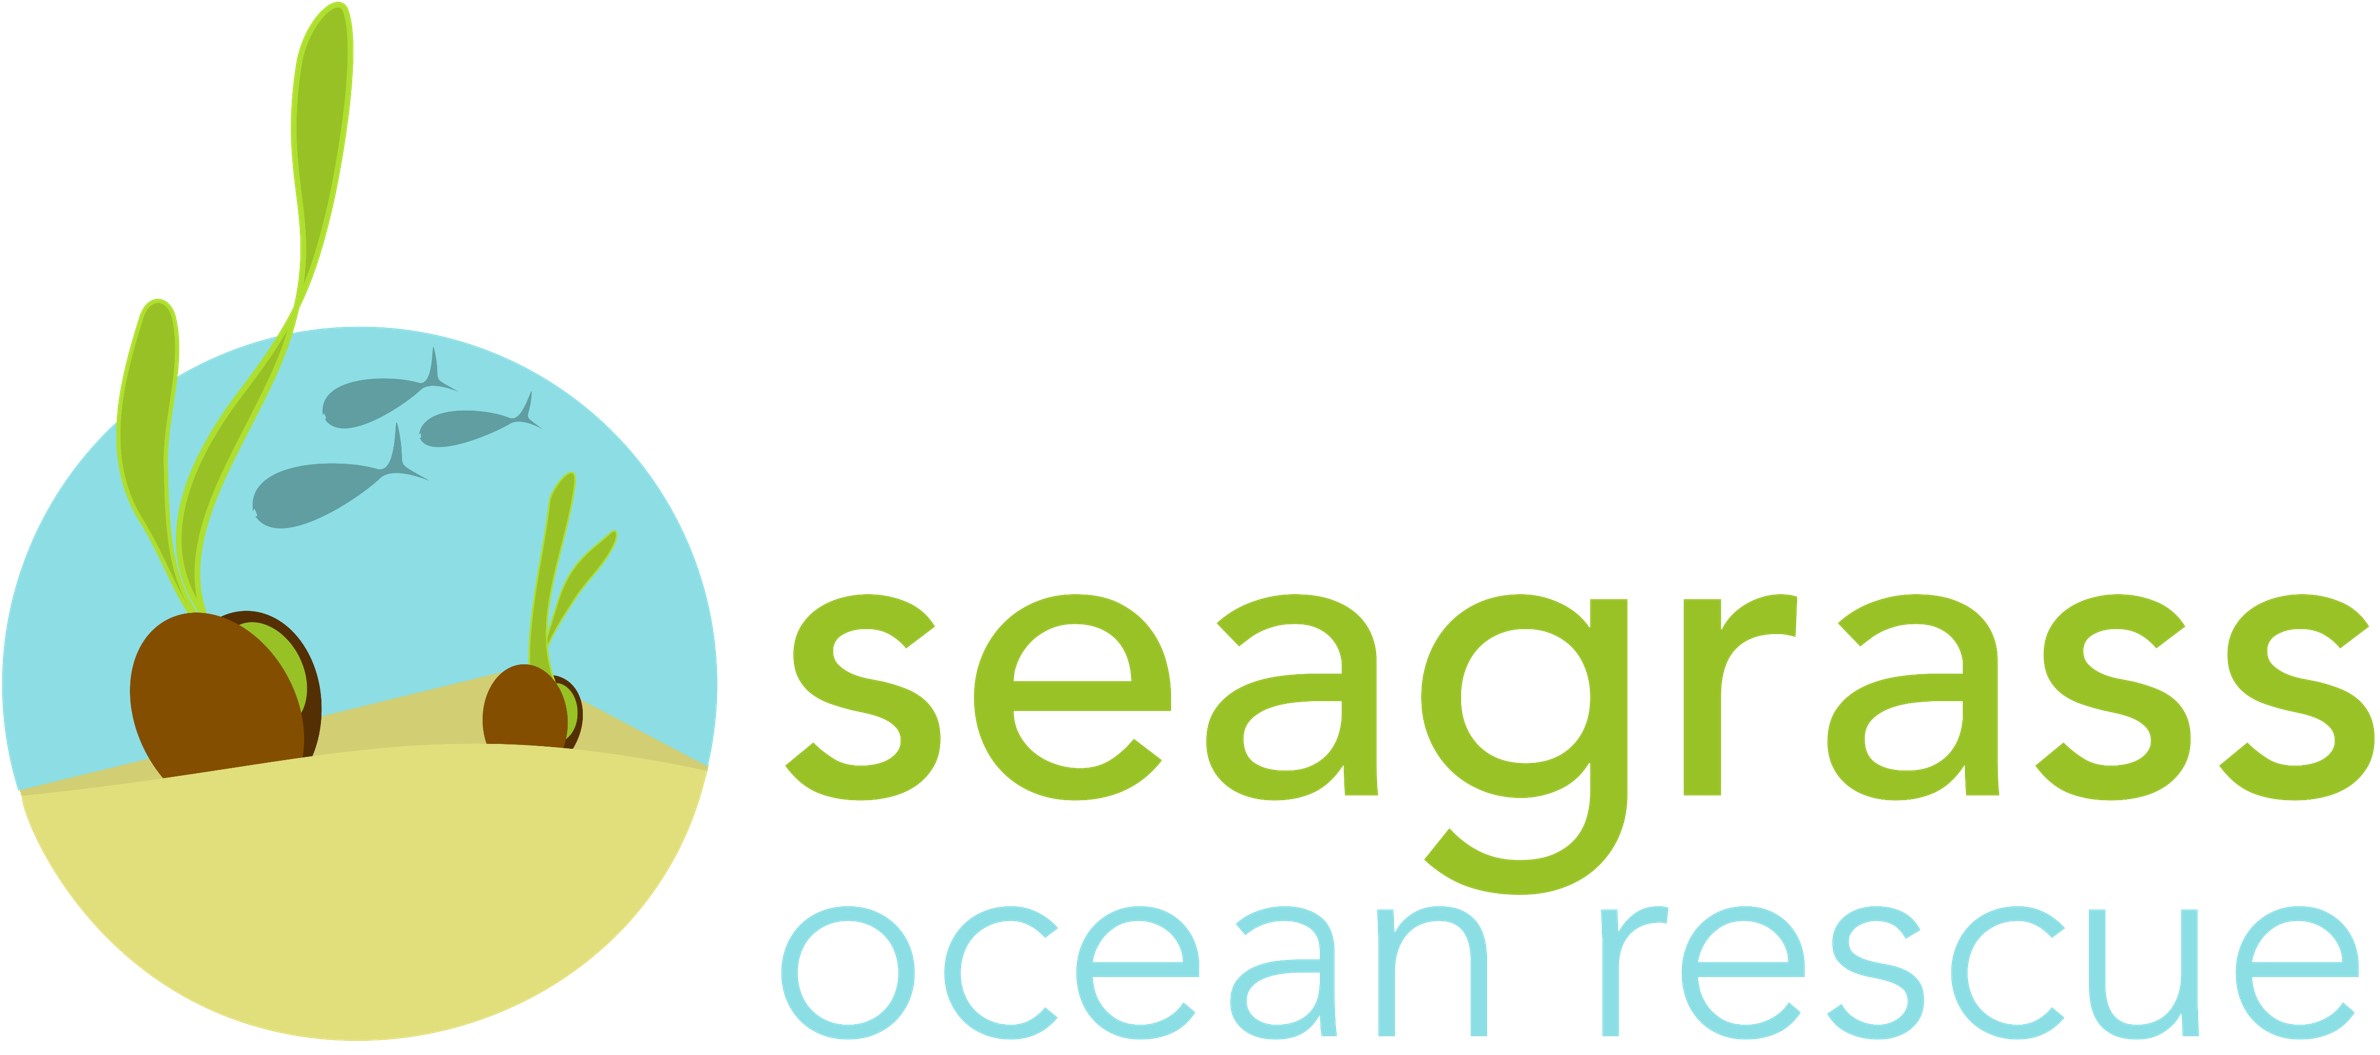 Seagrass Ocean Rescue logo